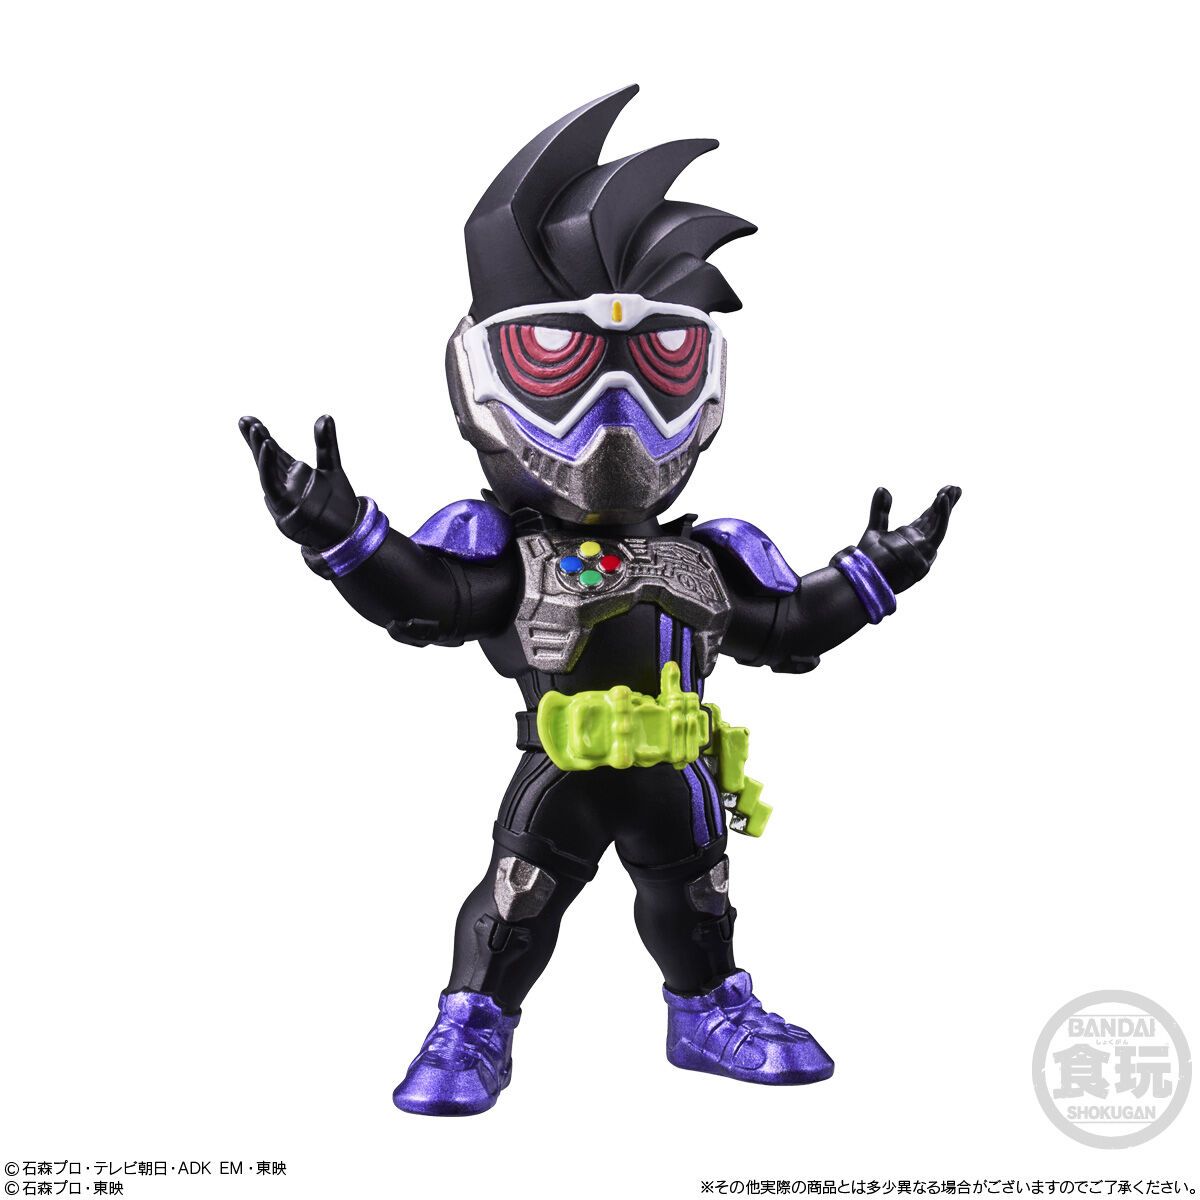  Converge Motion Kamen Rider 2 Đồ Chơi Mô Hình Nhân Vật  BANDAI CANDY A2633564-4778 